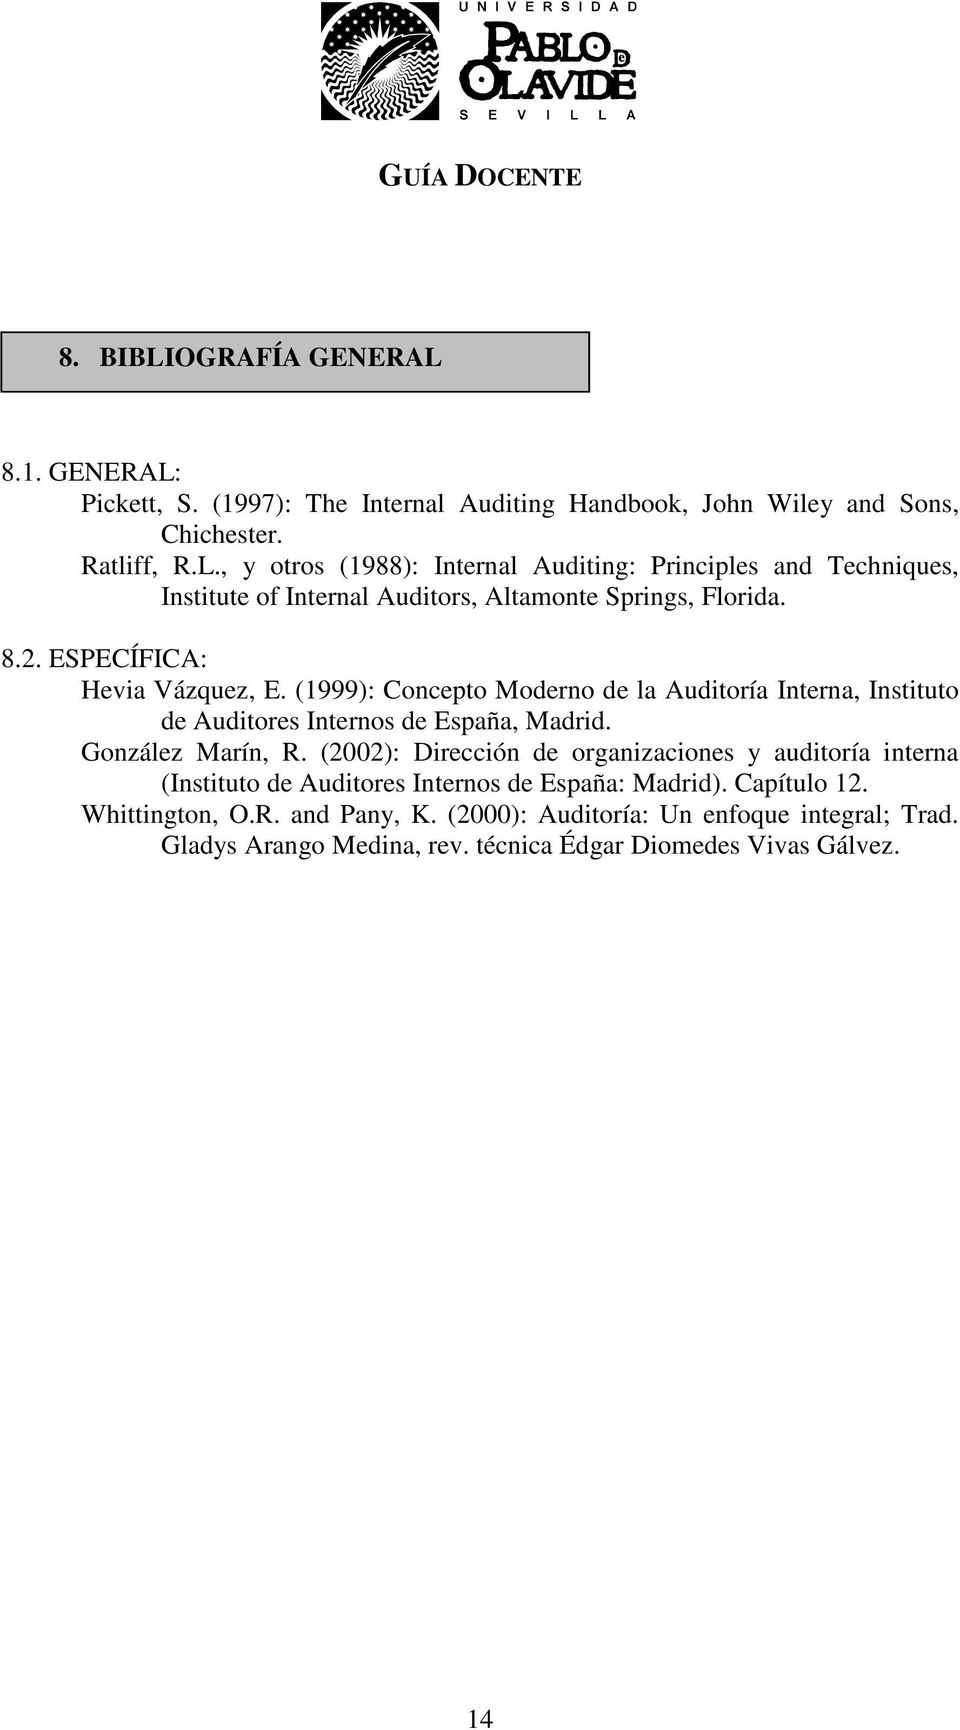 (2002): Dirección de organizaciones y auditoría interna (Instituto de Auditores Internos de España: Madrid). Capítulo 12. Whittington, O.R. and Pany, K.